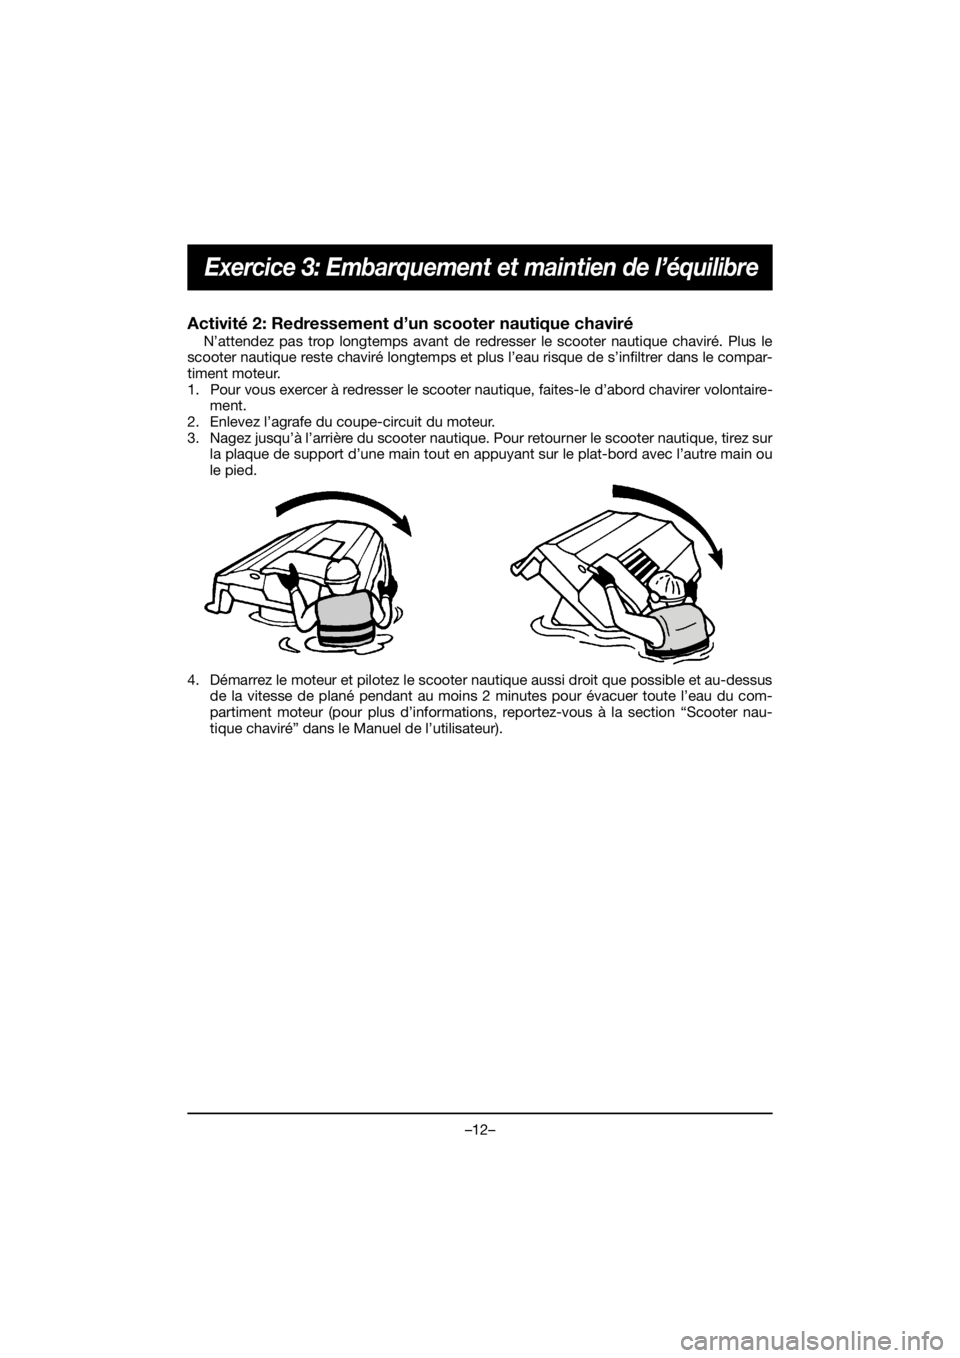 YAMAHA EX 2021  Manuale de Empleo (in Spanish) –12–
Exercice 3: Embarquement et maintien de l’équilibre
Activité 2: Redressement d’un scooter nautique chaviré 
N’attendez pas trop longtemps avant de redresser le scooter nautique chavi